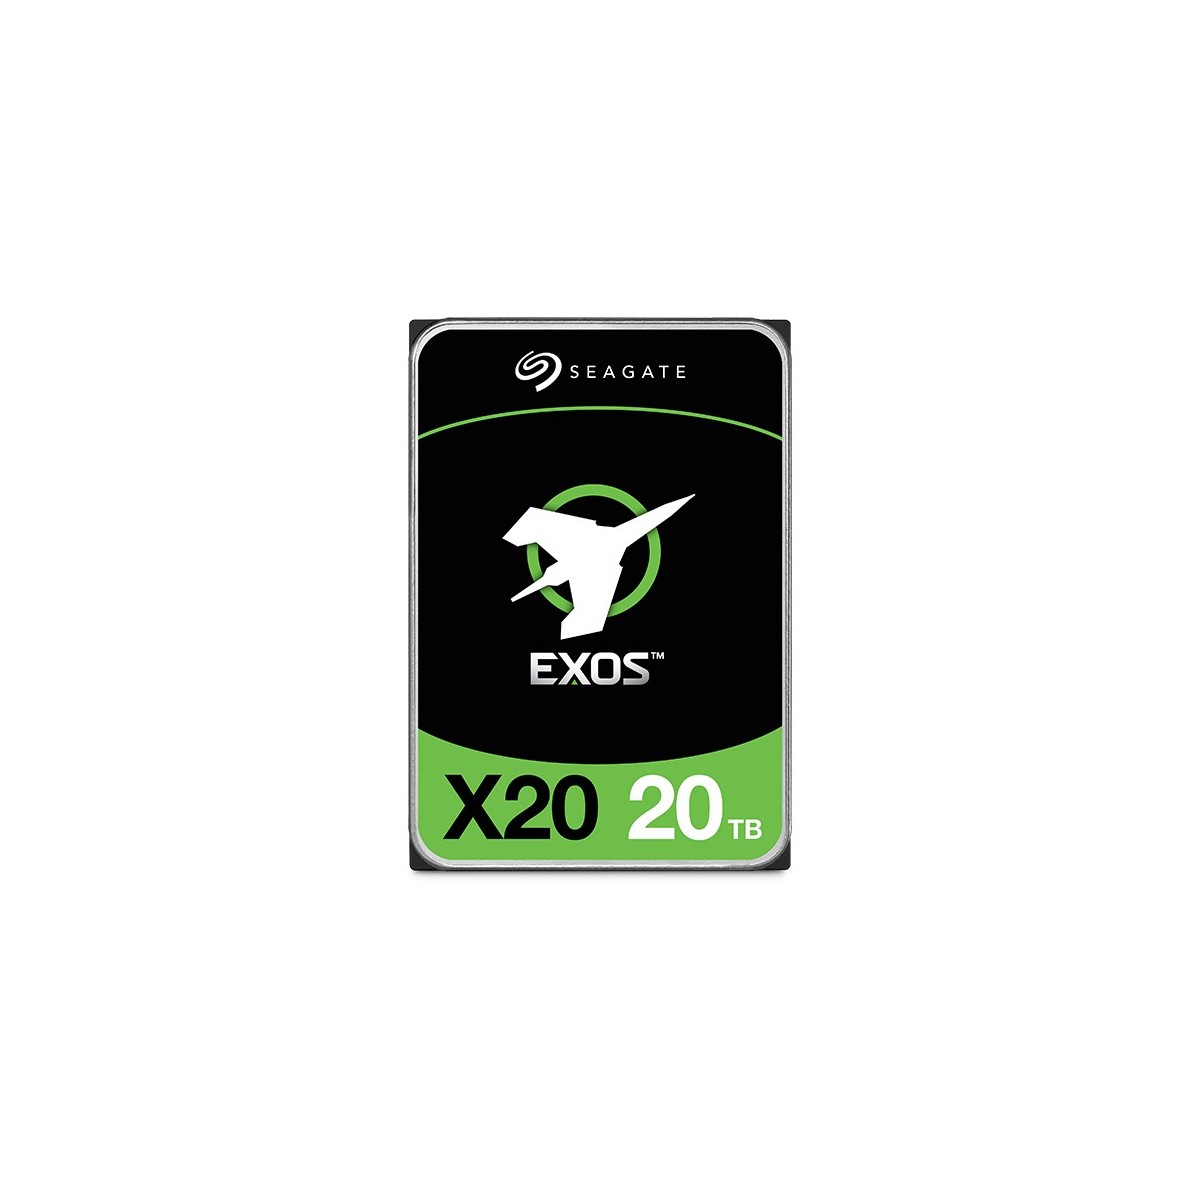 Seagate EXOS X20 20TB SATA 3.5IN 7200RPM 6GB/S 512E/4KN - Serial ATA - 20,000 GB